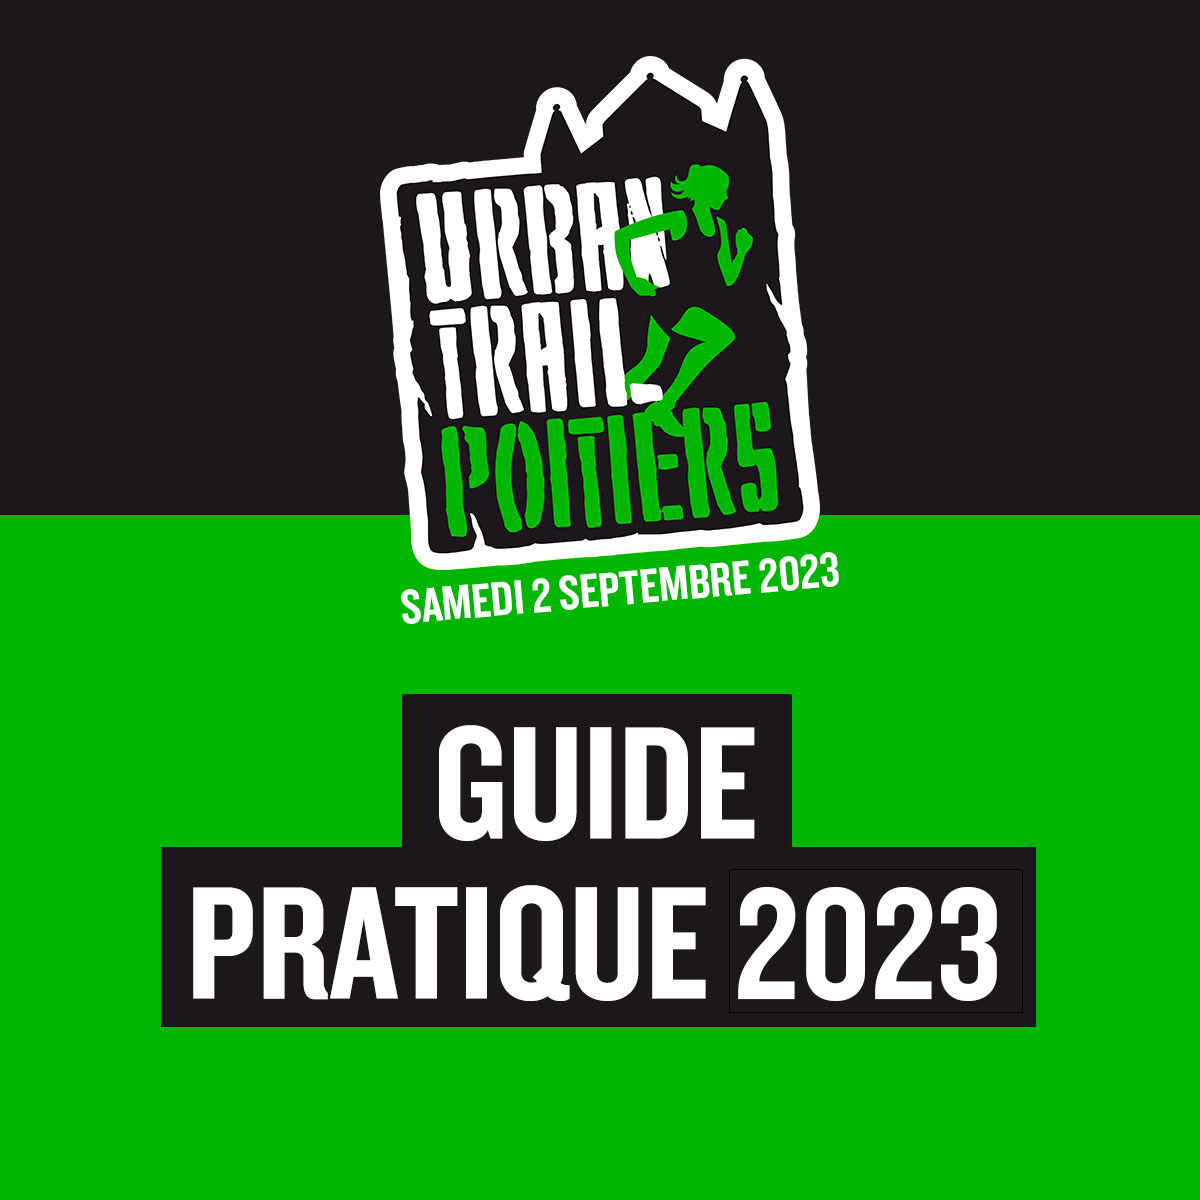 Guide pratique de l'Urban Trail de Poitiers 2023